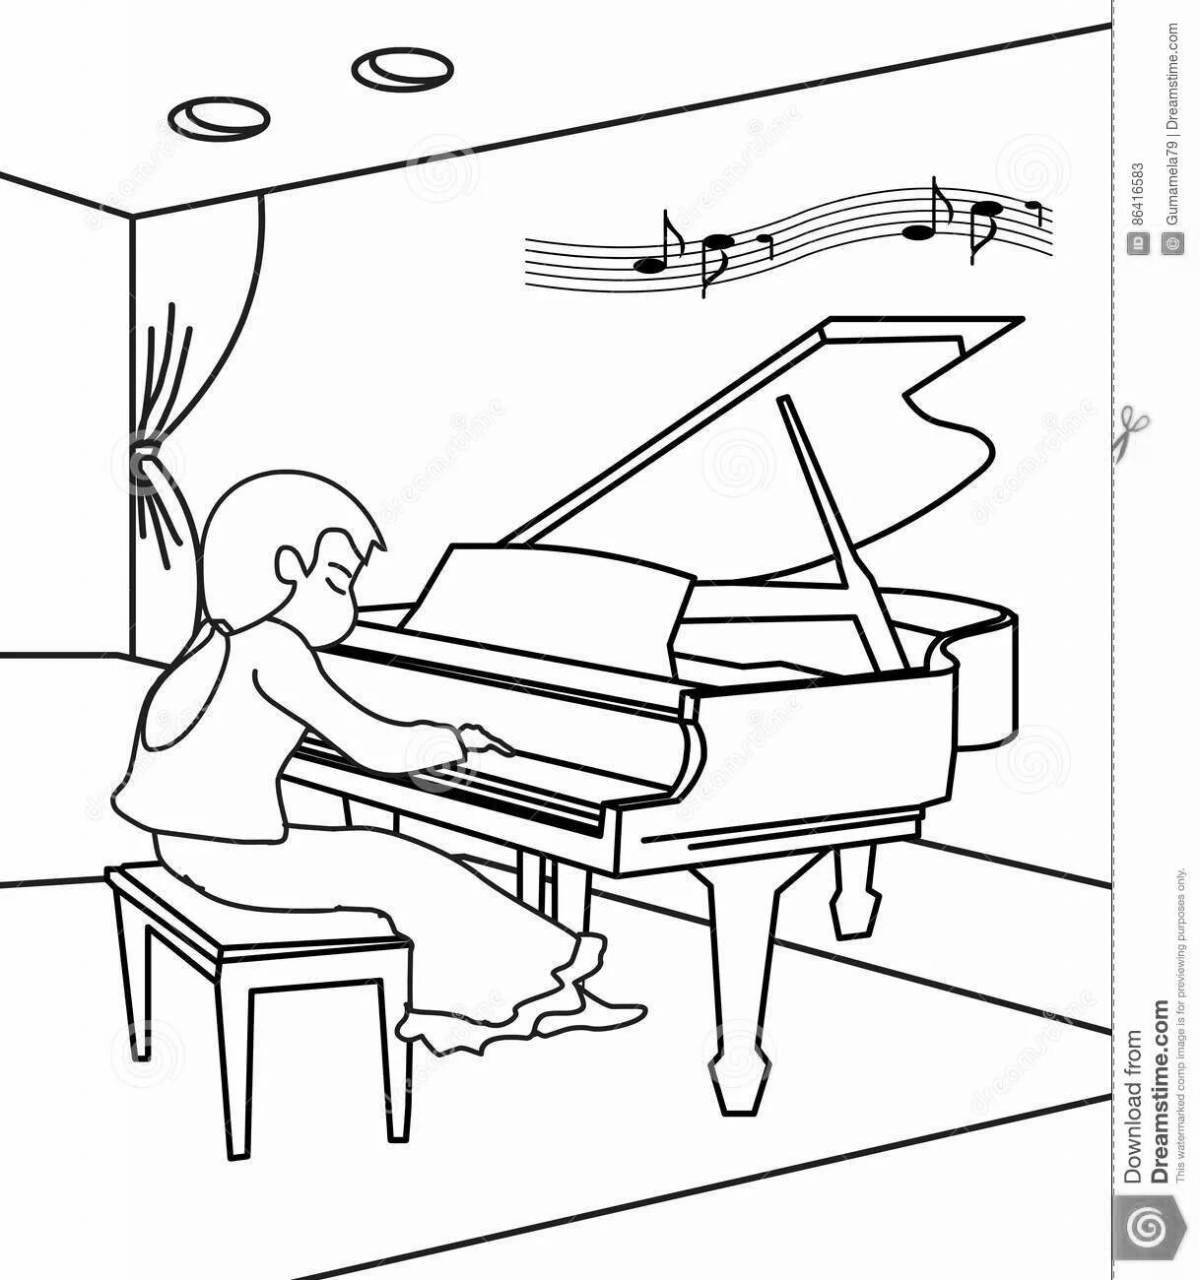 Children's piano #7